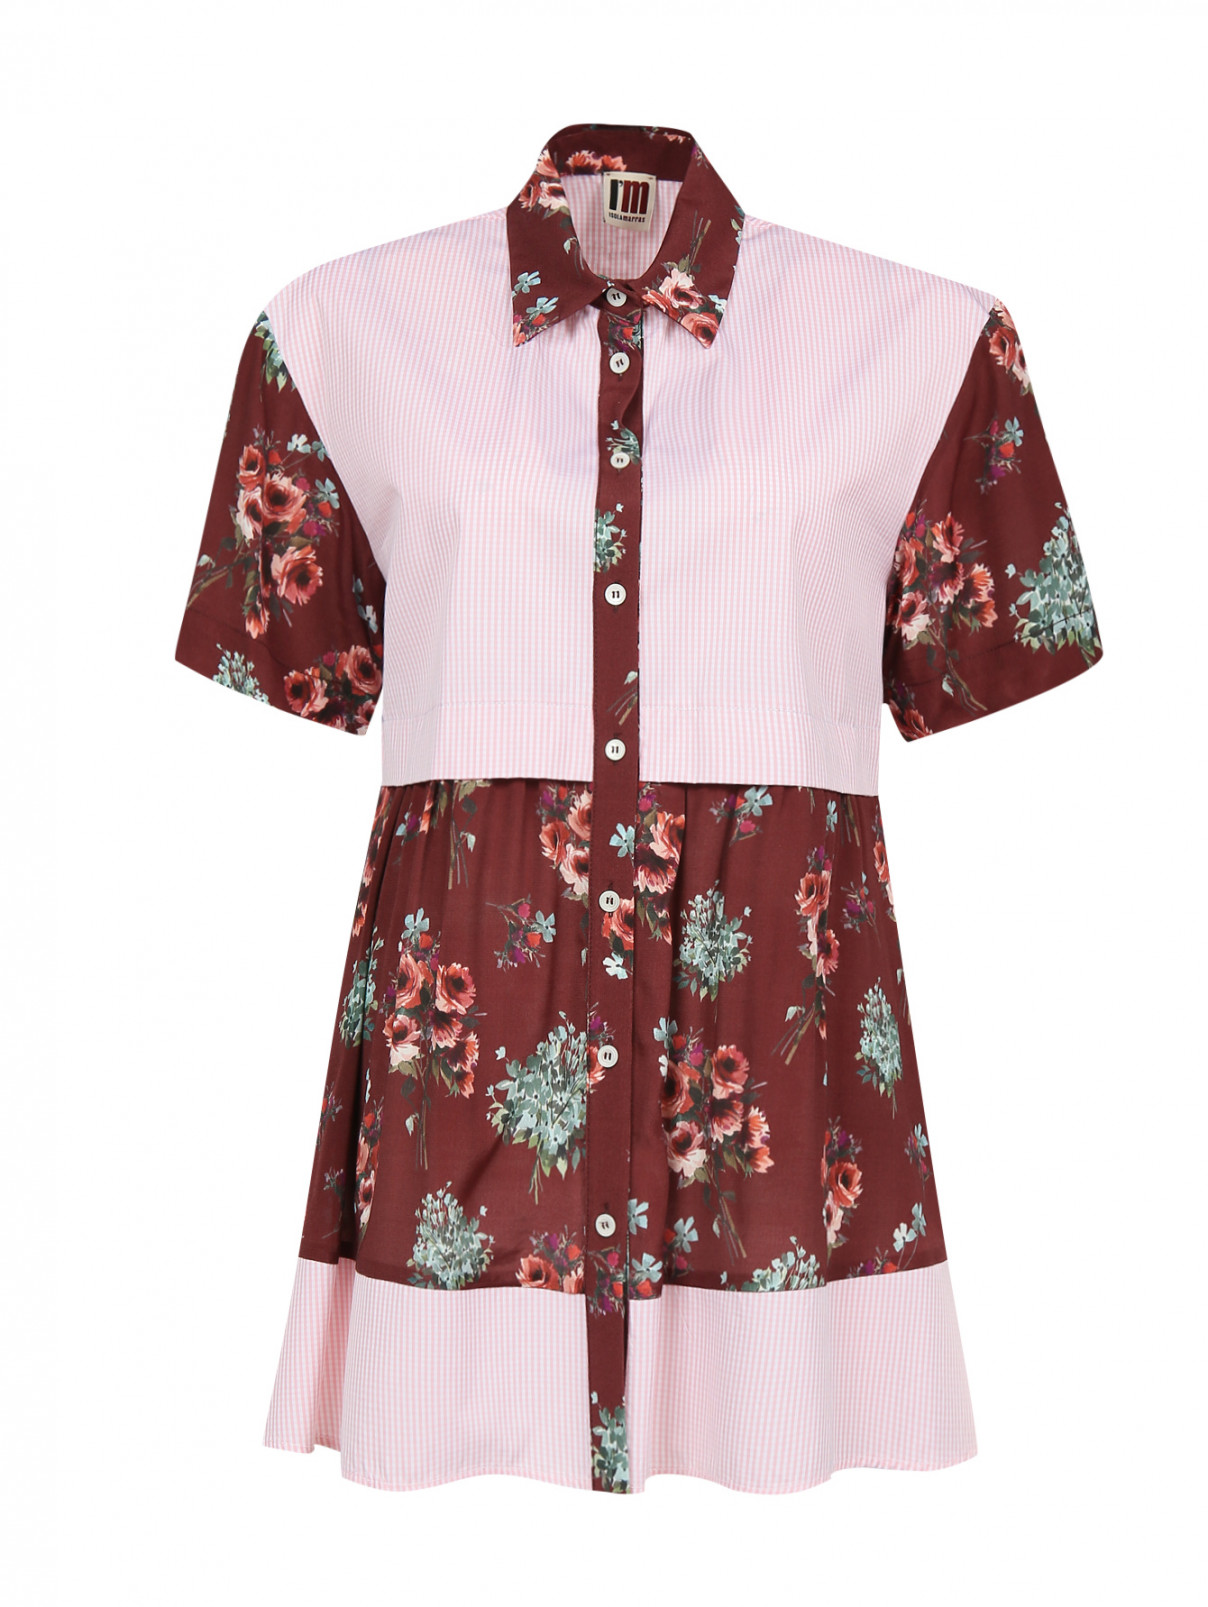 Блуза из хлопка и вискозы с контрастными вставками I'M Isola Marras  –  Общий вид  – Цвет:  Узор